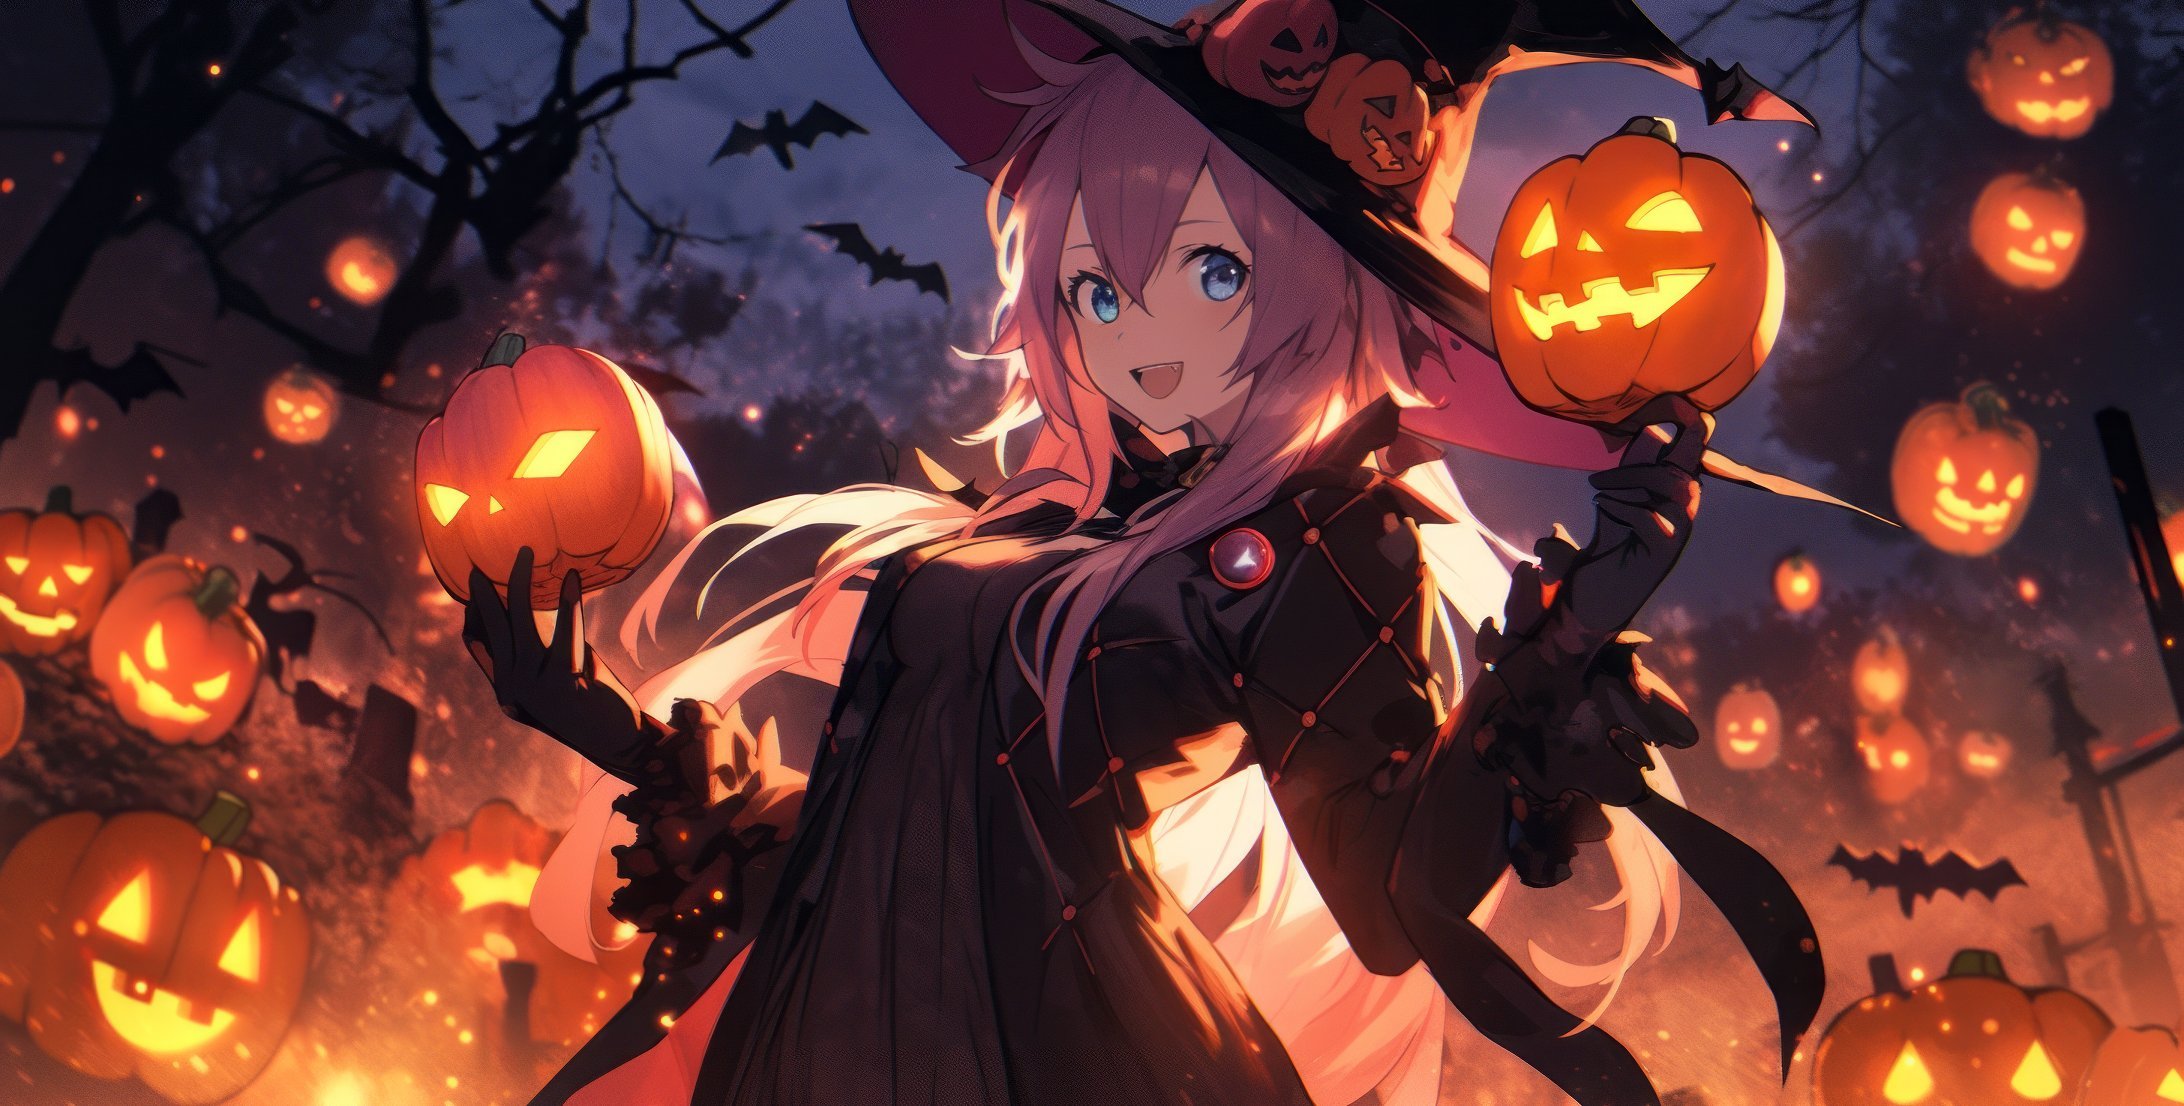 Fondos de pantalla Anime Girl In Halloween Costume